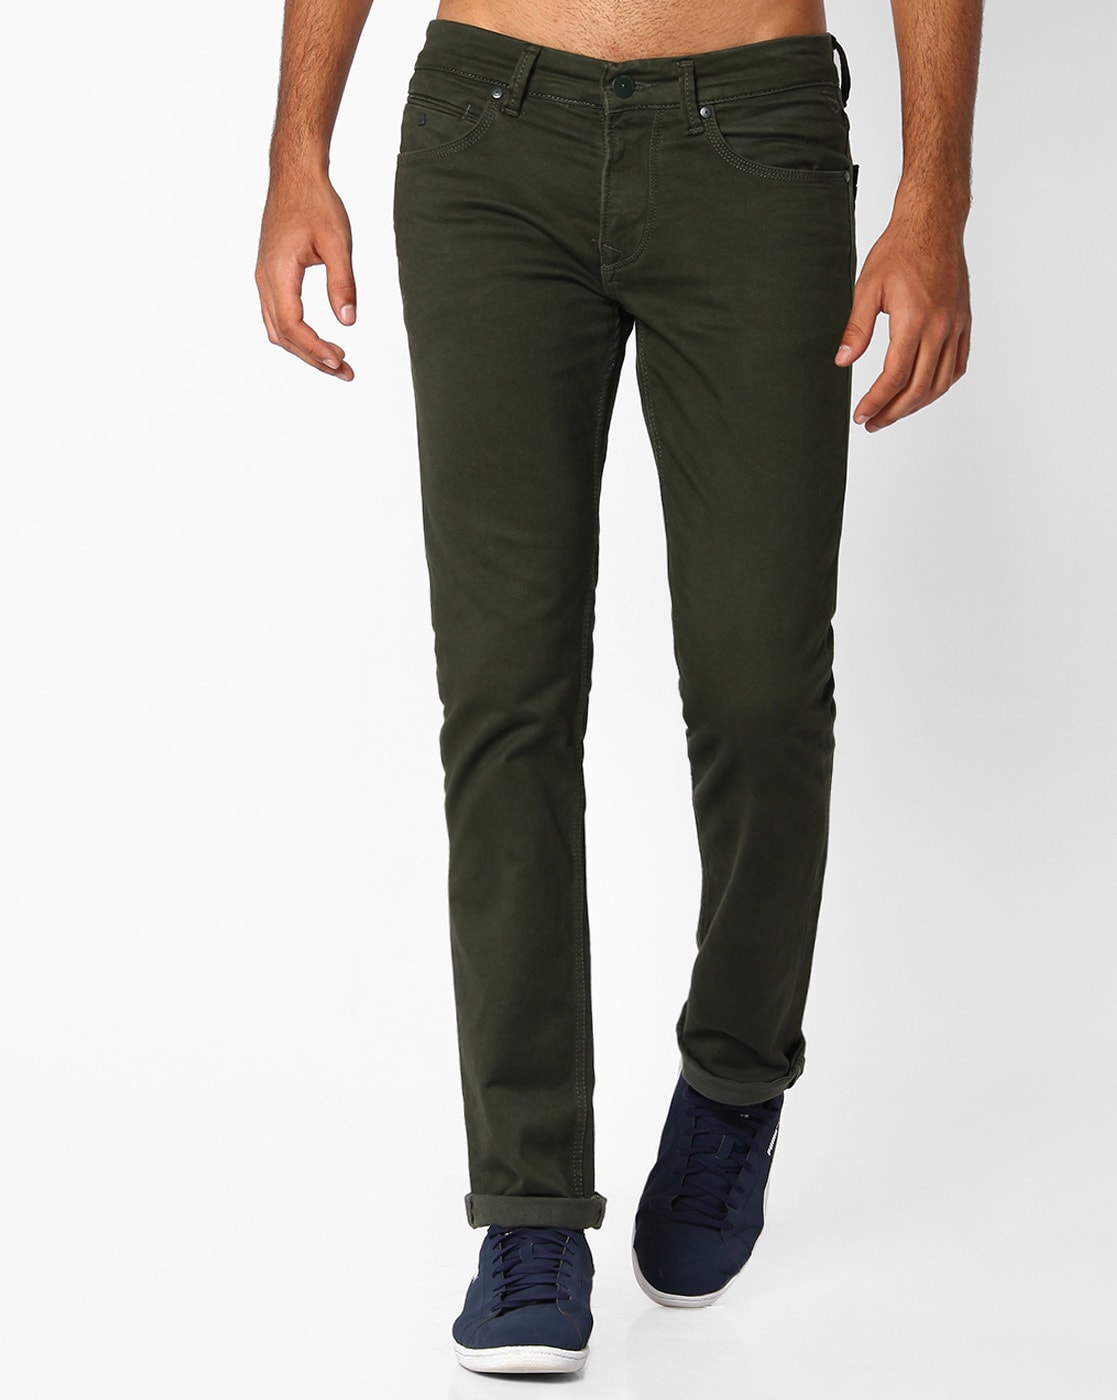 Intim Wettbewerber Ungünstig military green jeans Ach je ...